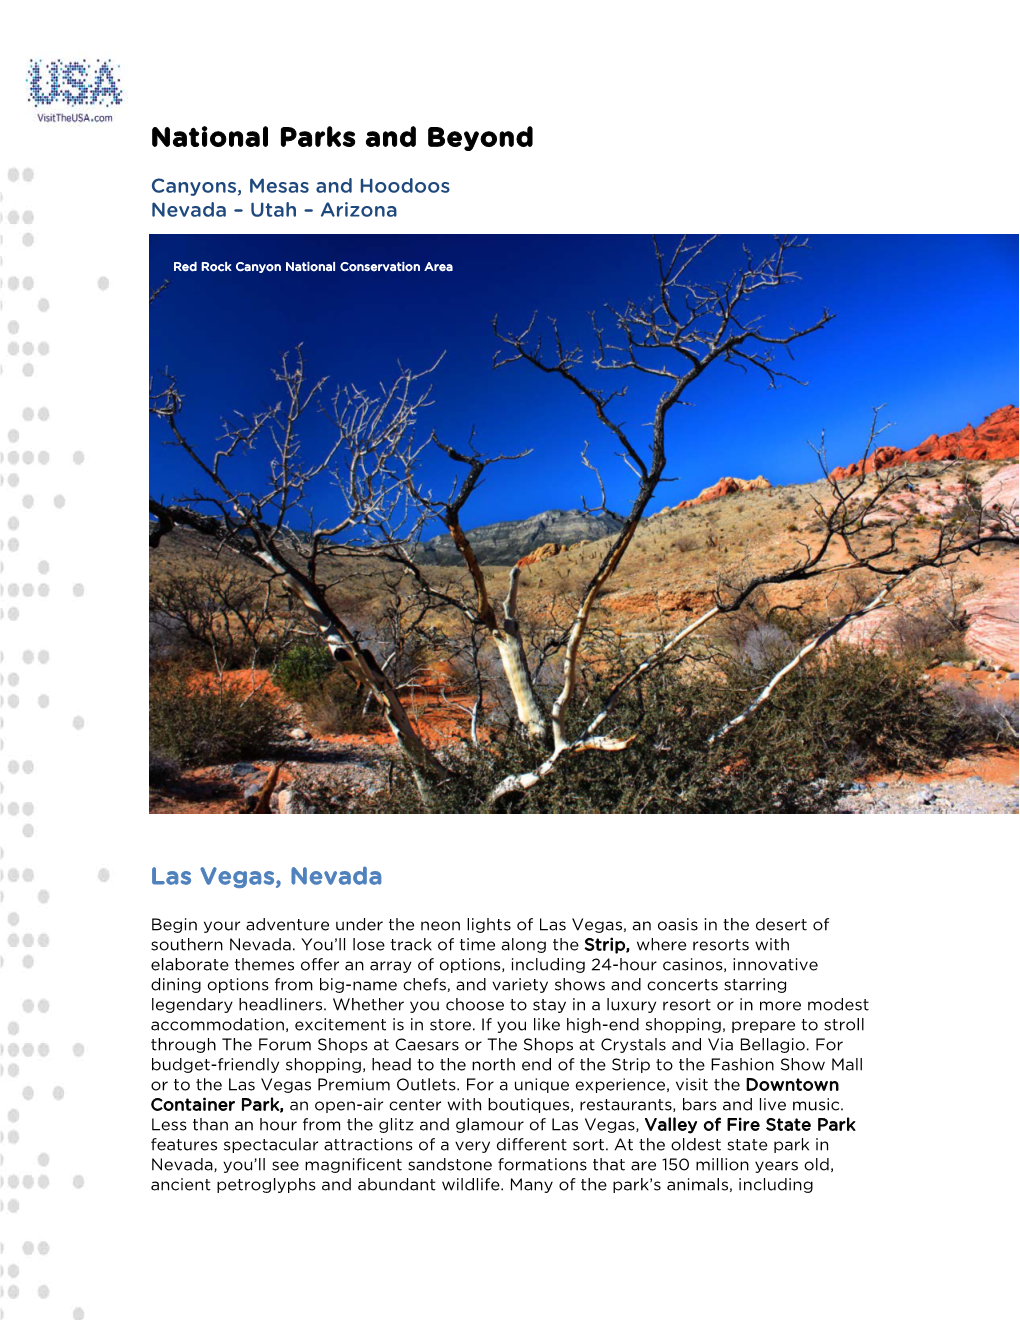 Canyons, Mesas and Hoodoos Nevada – Utah – Arizona